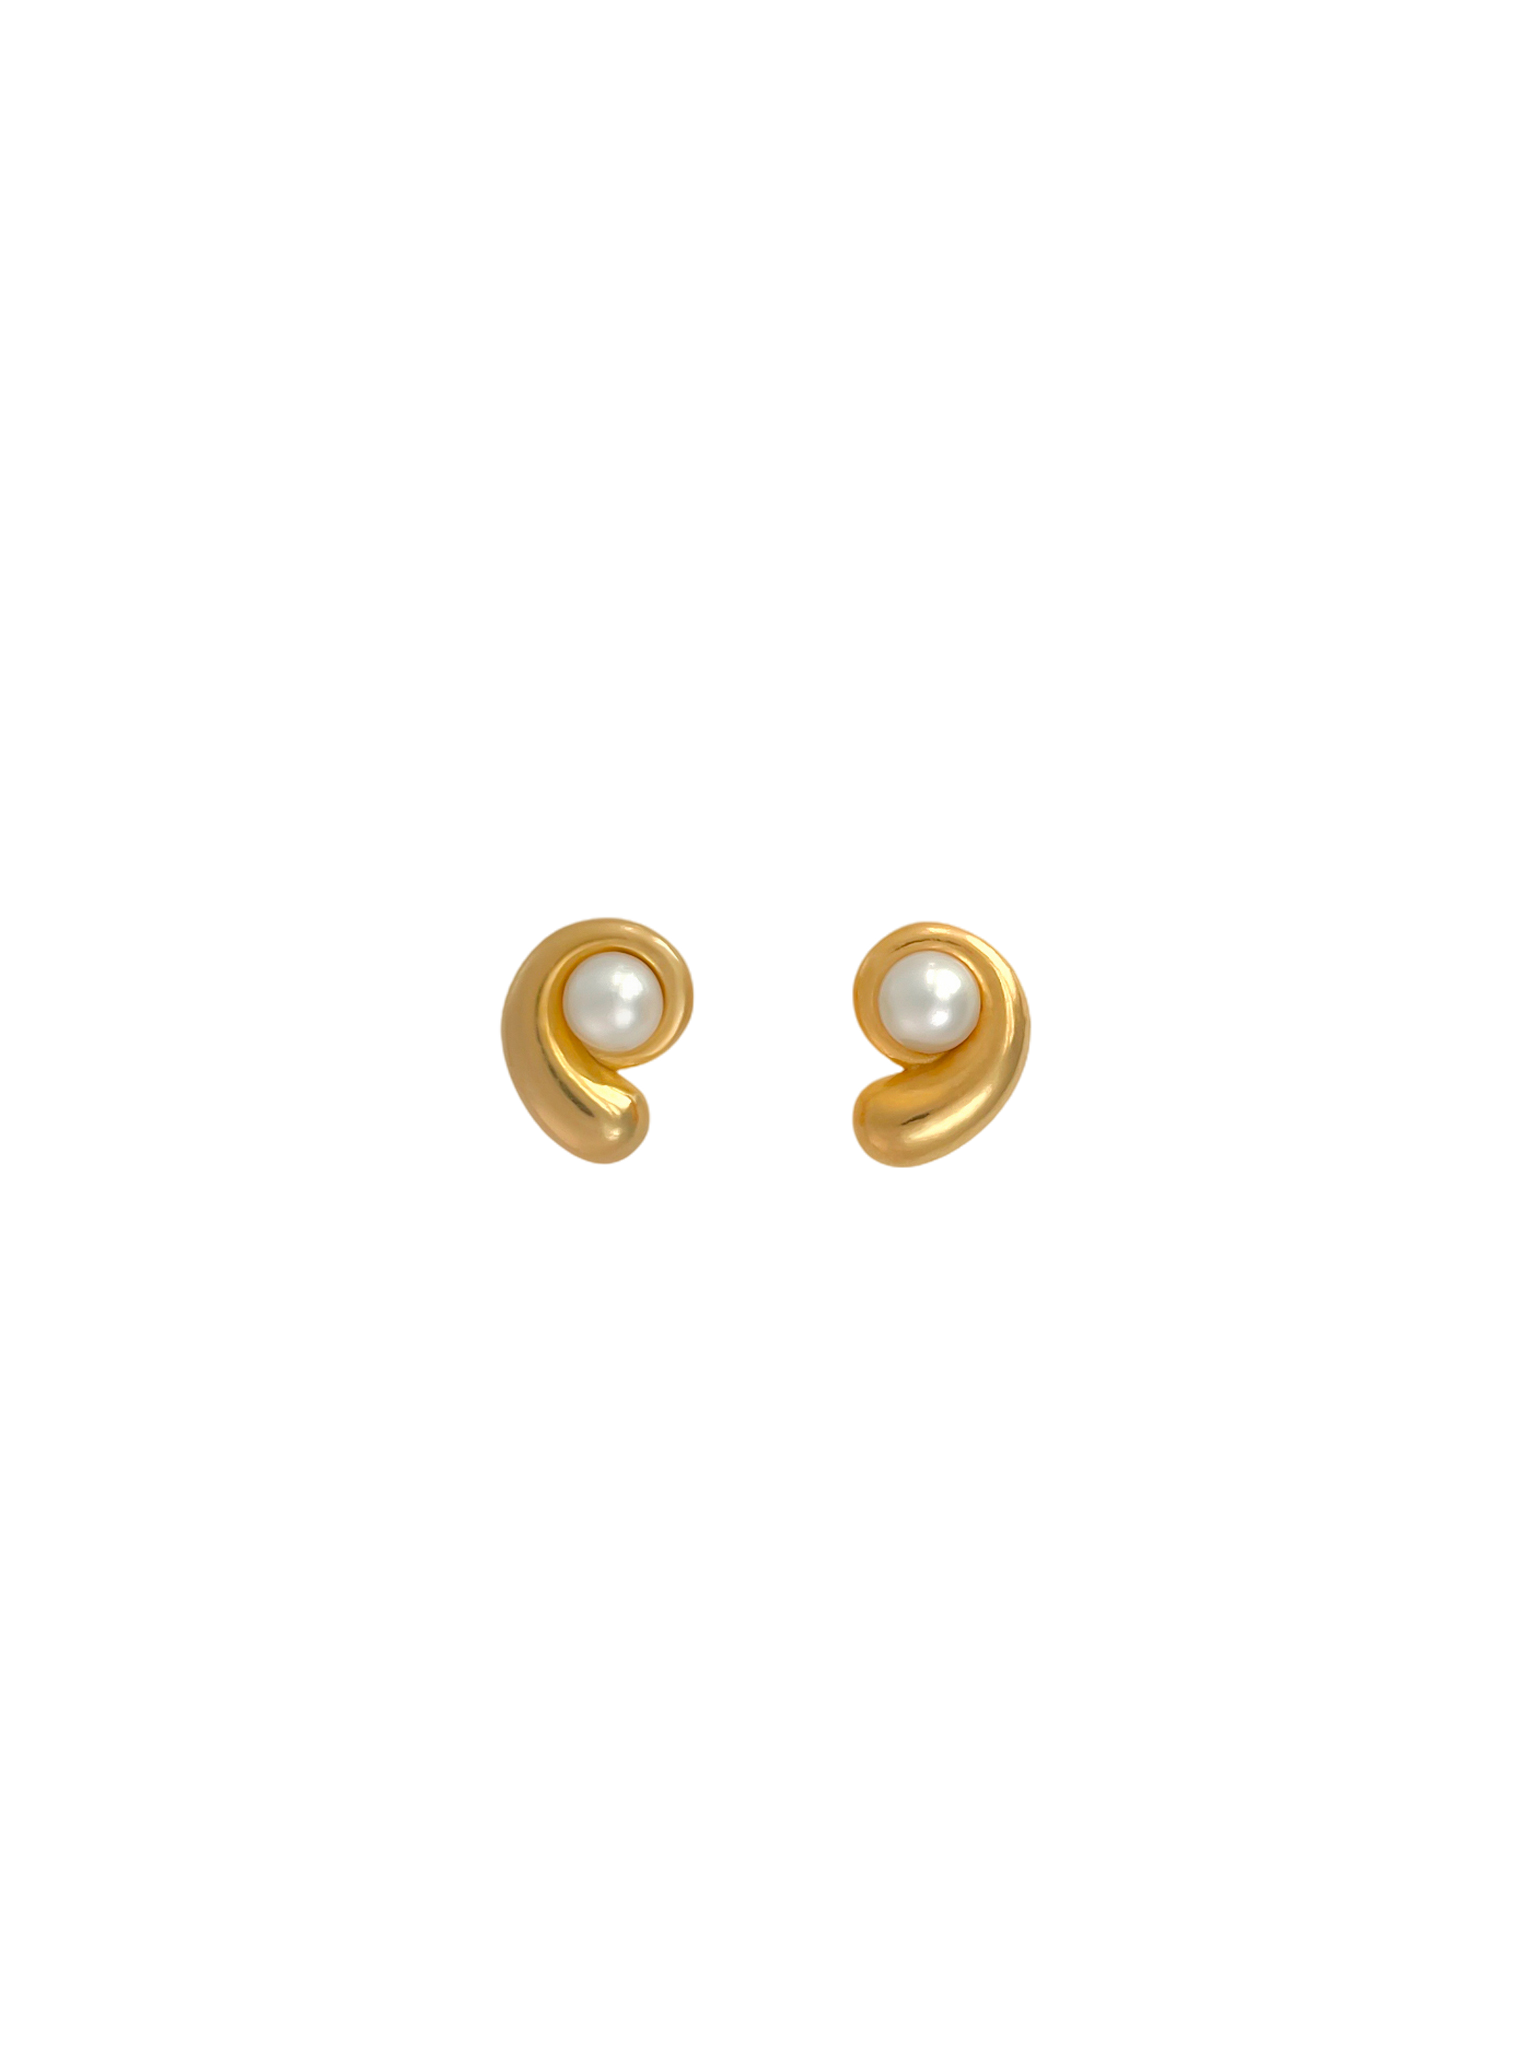 Nautilus pearl earrings in gold vermeil